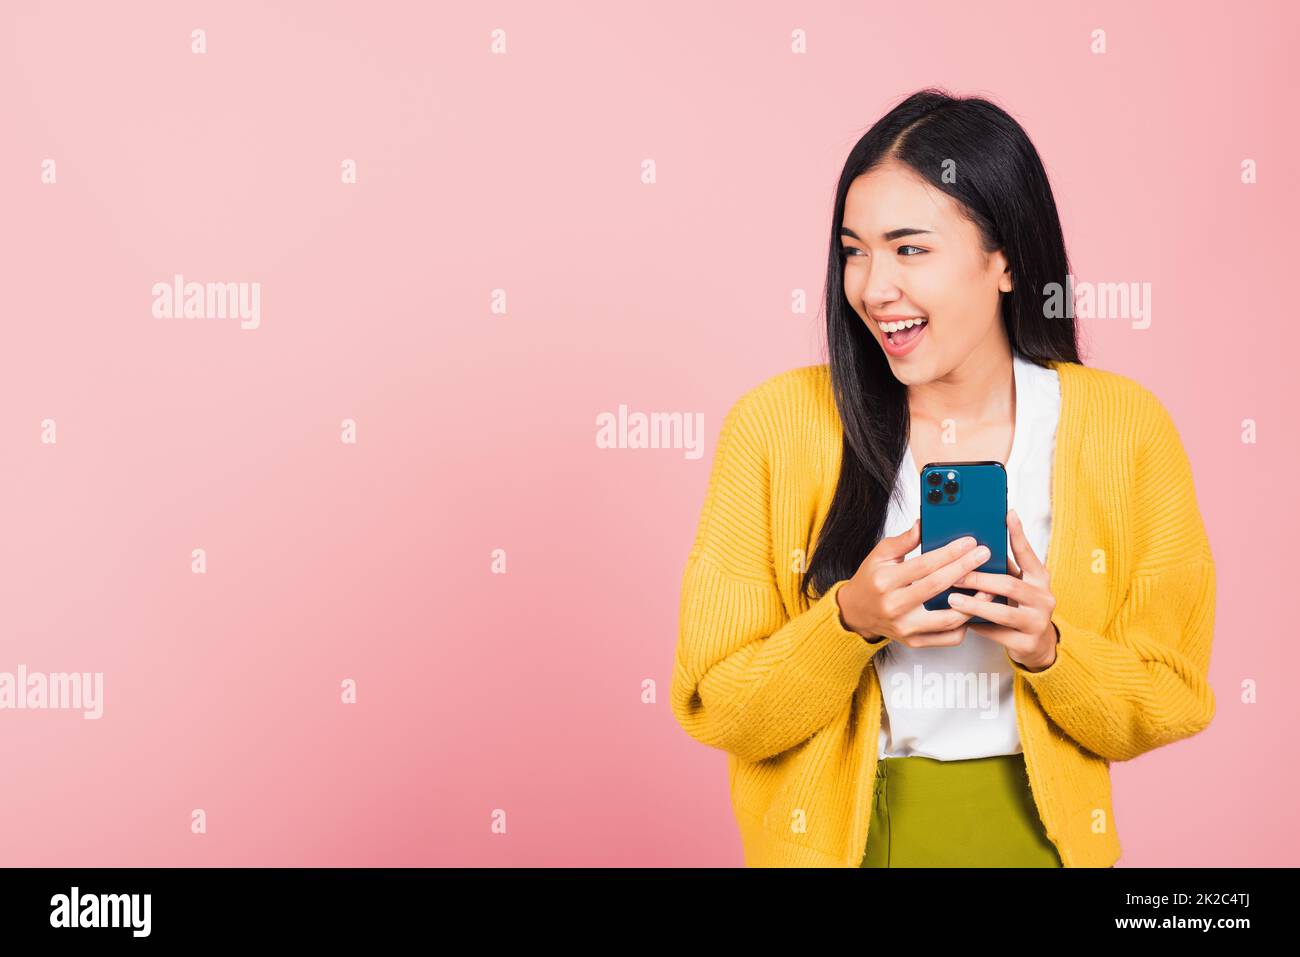 femme adolescente souriante enthousiaste à l'aide d'un téléphone portable intelligent Banque D'Images